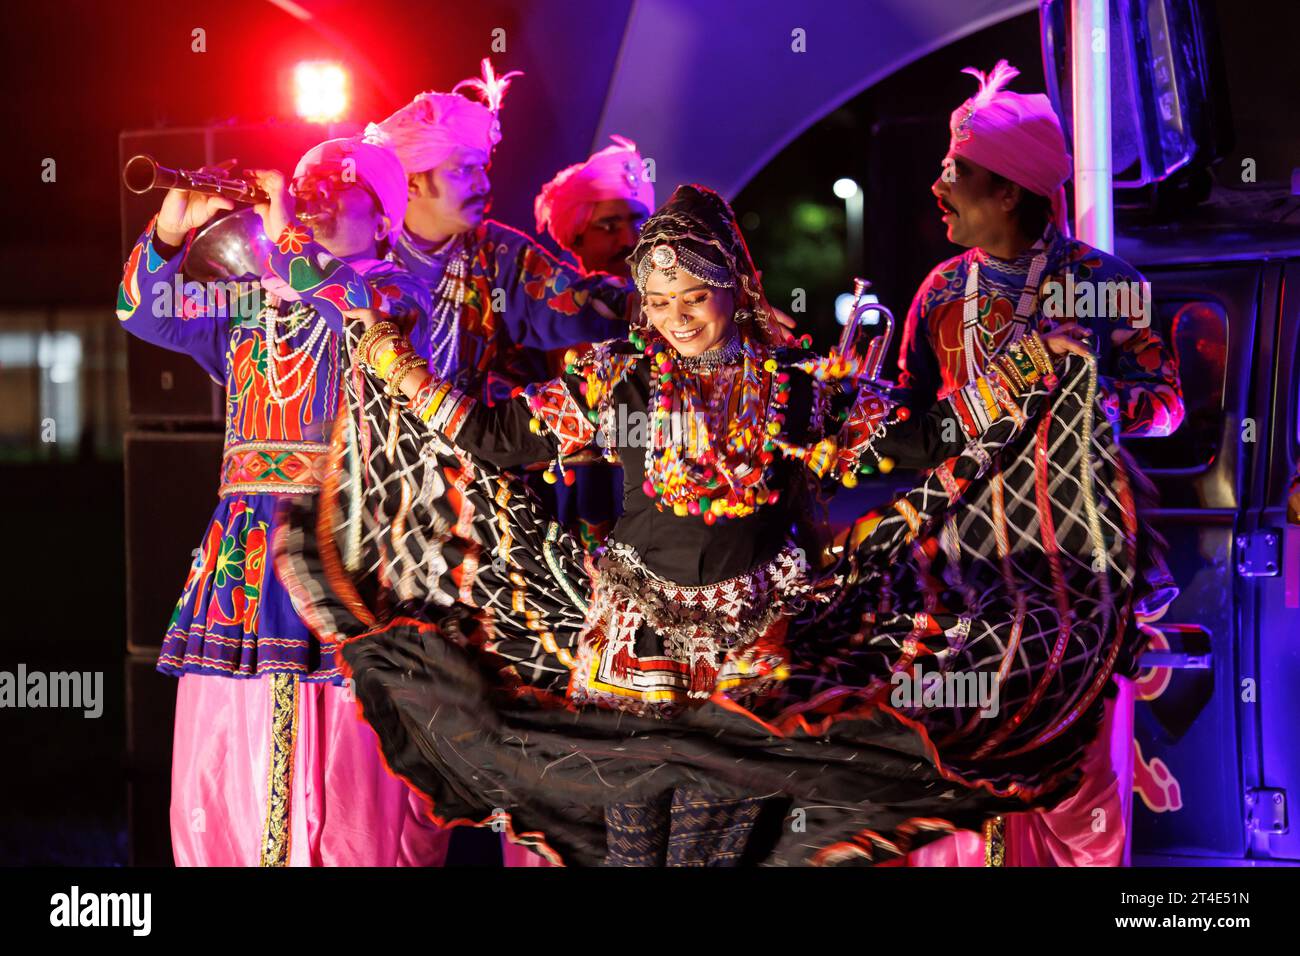 Leicesters Feier von Diwali ist bekannt als eines der größten außerhalb Indiens. Die Musiker und Tänzer, die während des Eröffnungsabends der Diwali-Feier auf dem Cossington Recreation Ground abgebildet wurden. Das Festival of Light ist einer der Höhepunkte des kulturellen Kalenders der Stadt und bietet Besuchern die Möglichkeit, die unglaubliche Lichtshow, das Feuerwerk und das Essen zu genießen und sogar eine Fahrt mit dem Rad des Lichts zu Unternehmen. Stockfoto